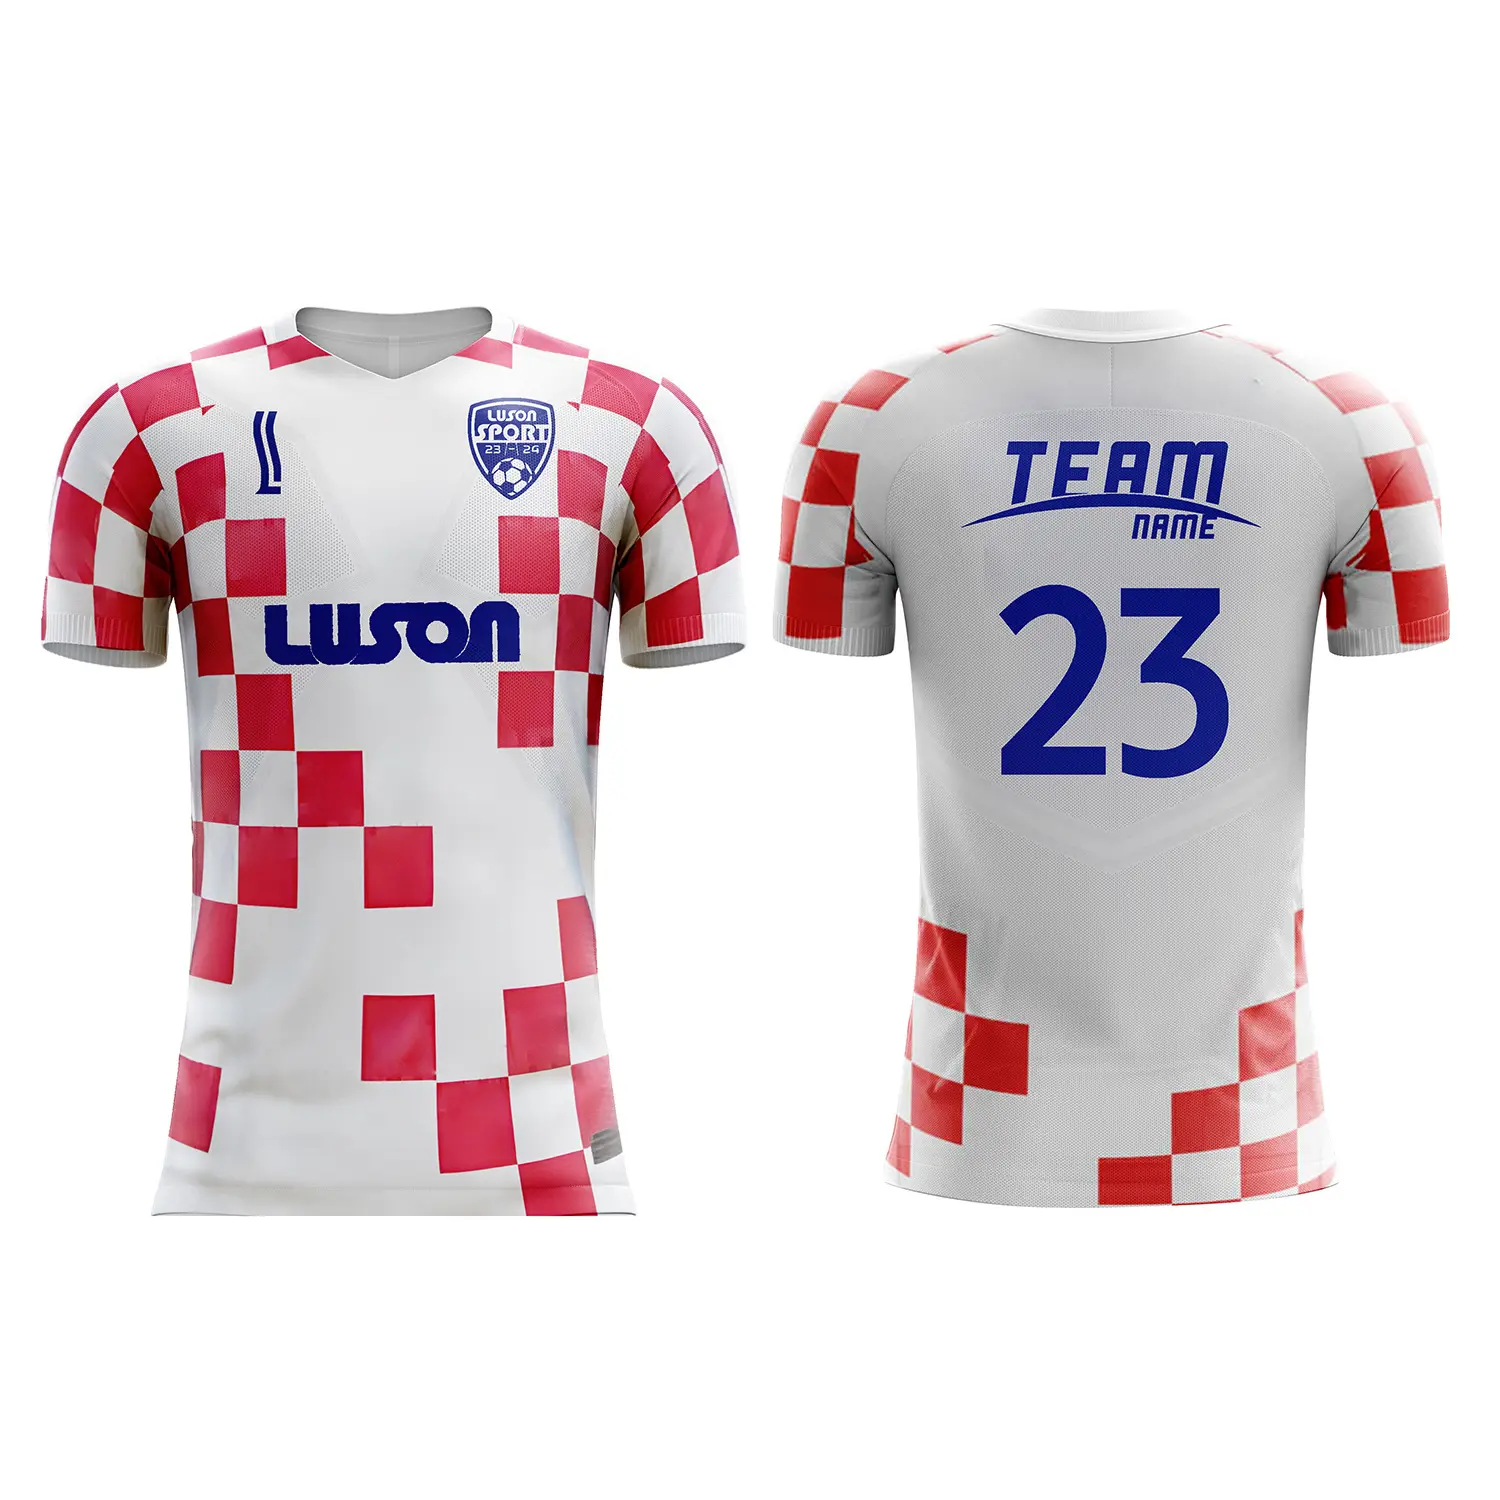 Luson sublimado rojo y blanco 100% poliéster fútbol uniforme FÚTBOL Camisetas jugador versión casa Croacia fútbol Jersey